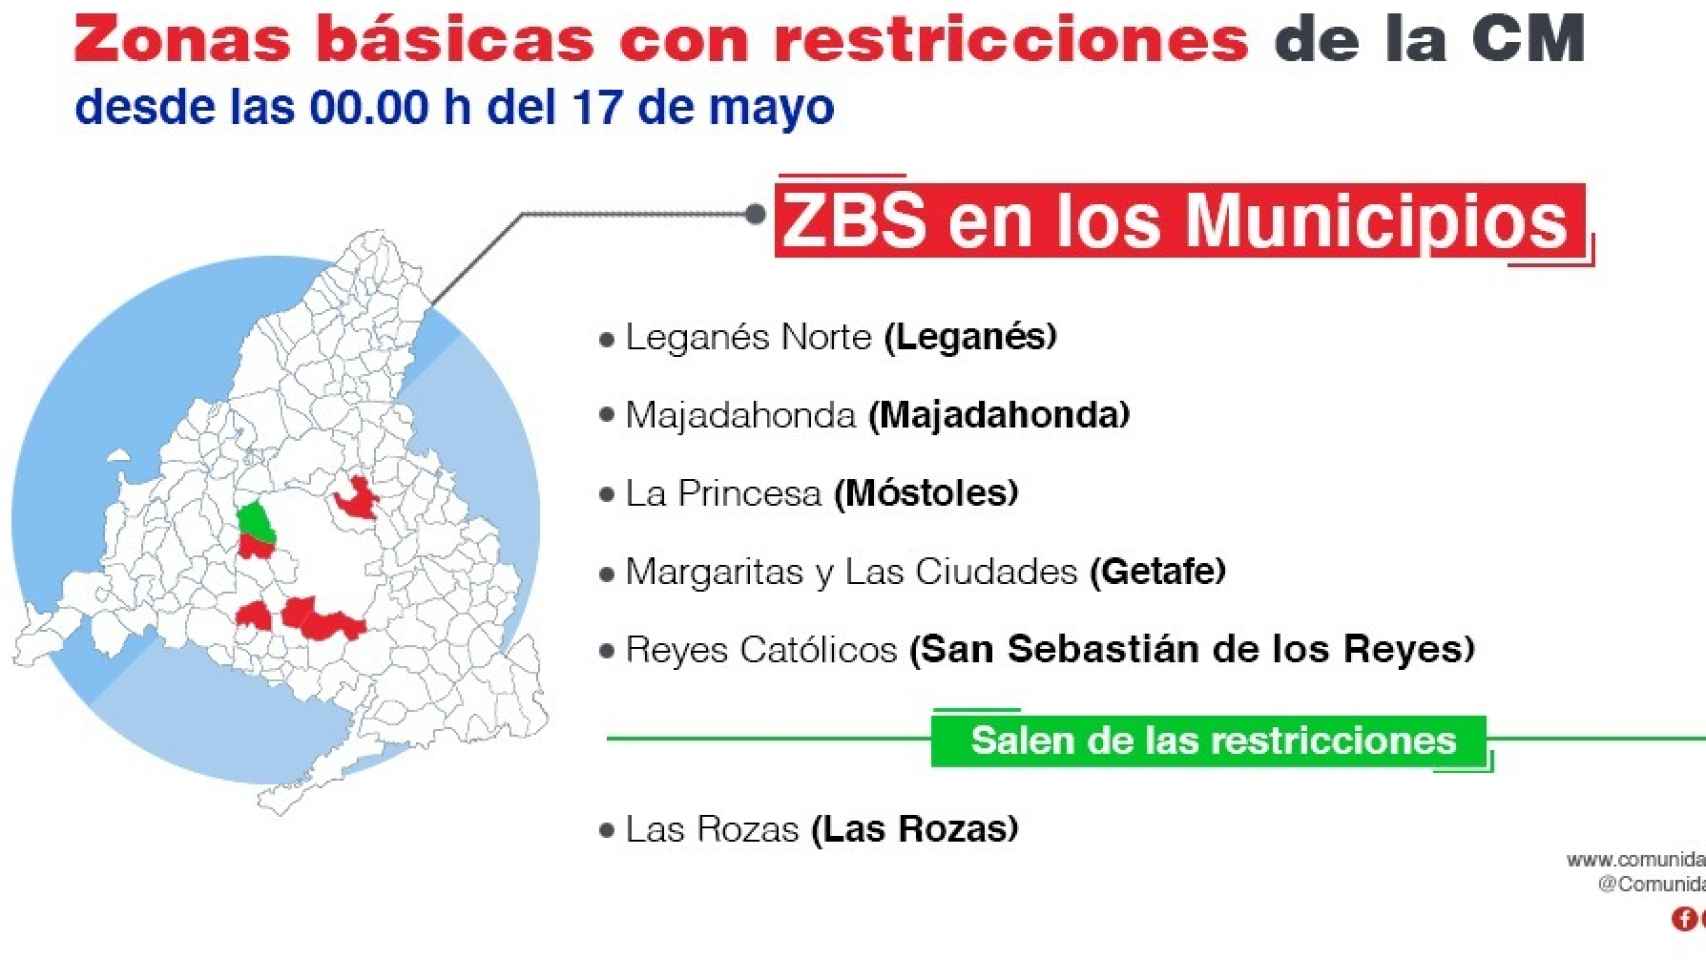 ZBS 'confinadas' en municipios de la Comunidad de Madrid.